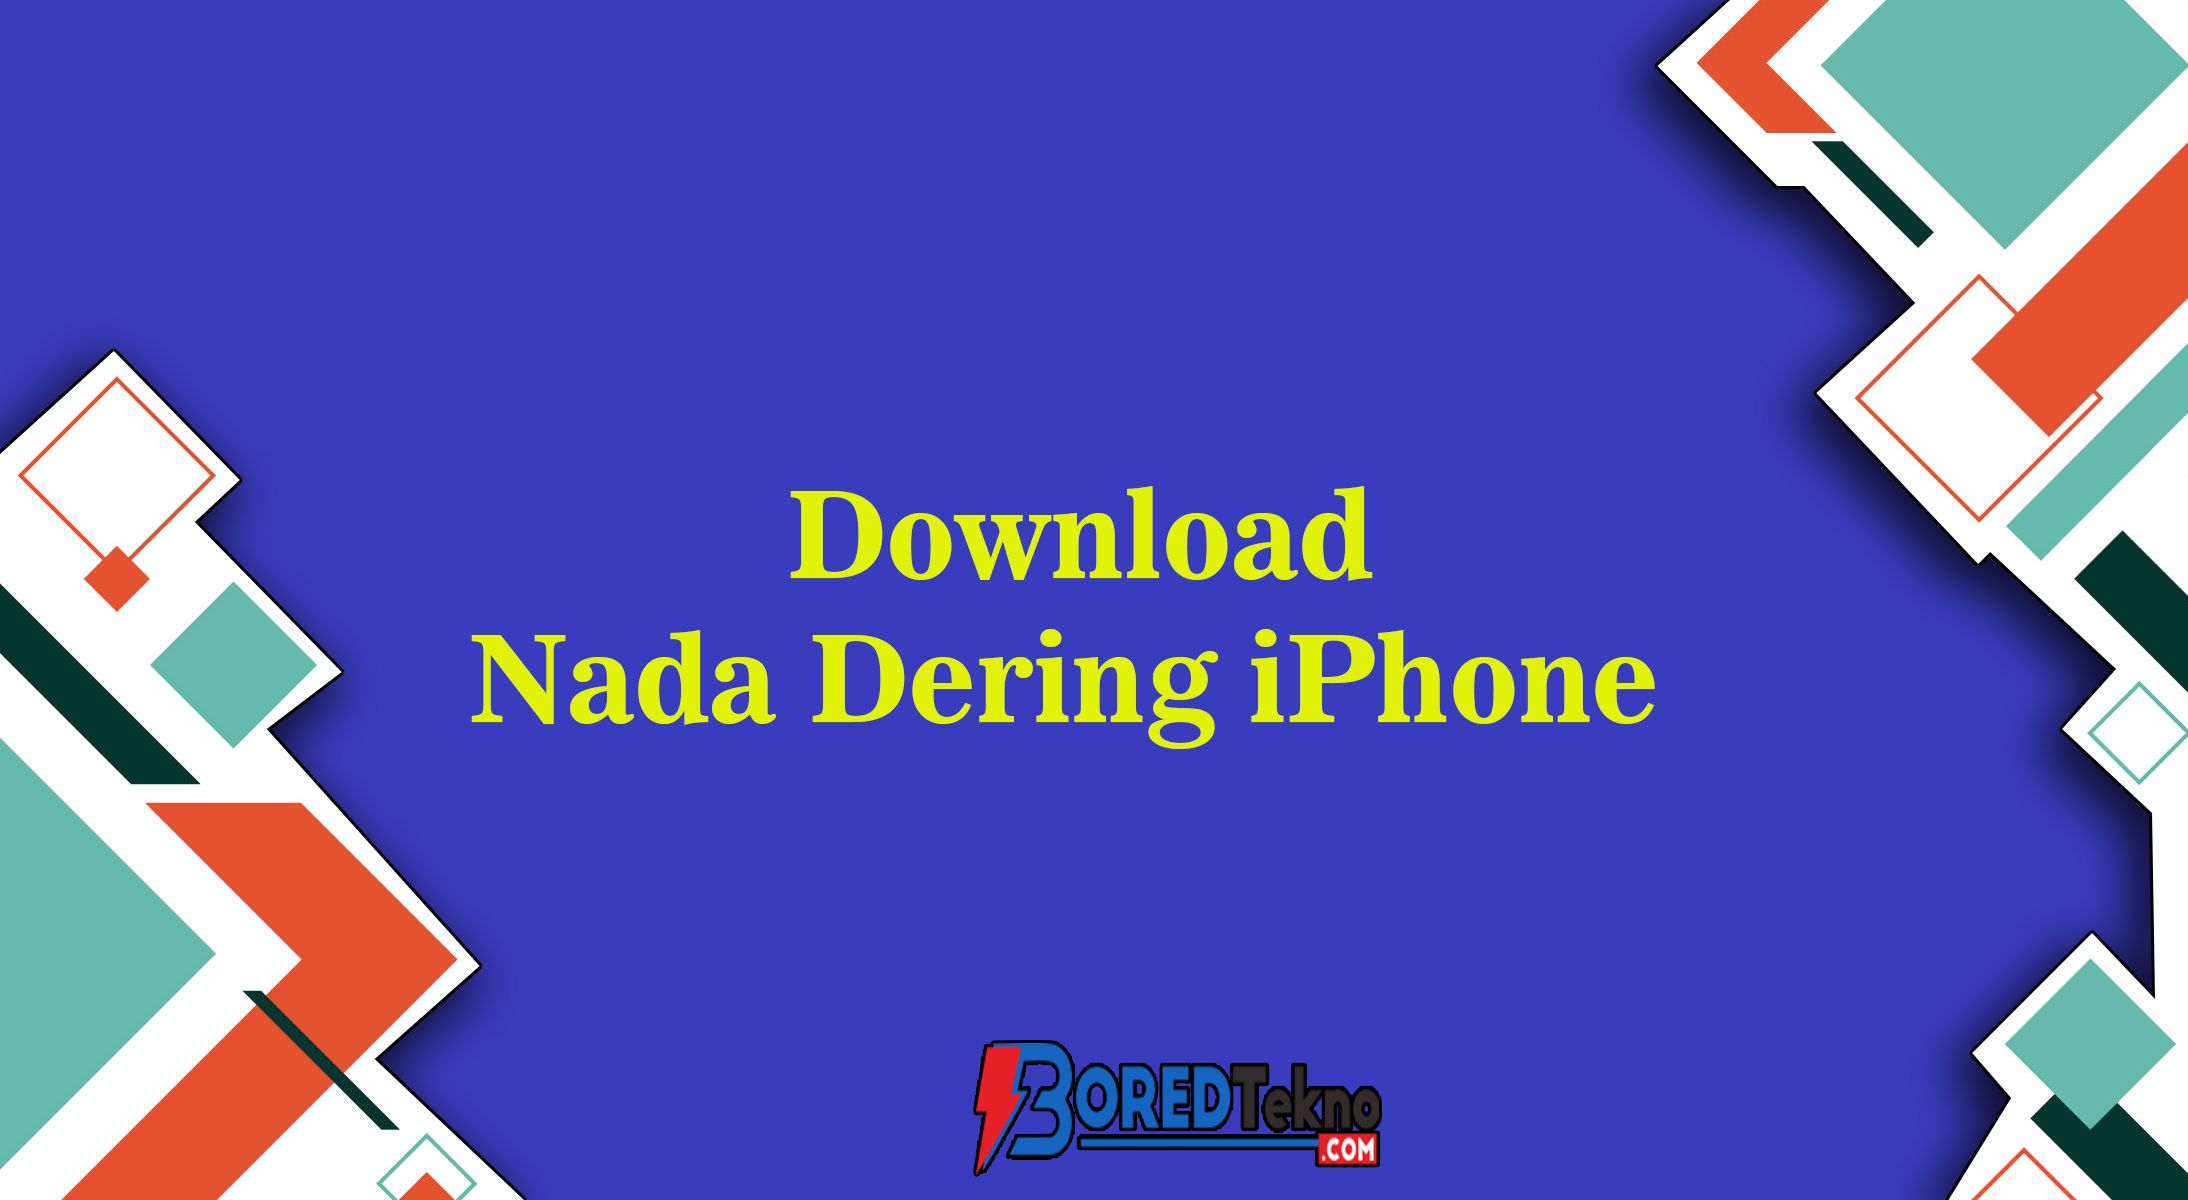 Download nada dering iphone 12